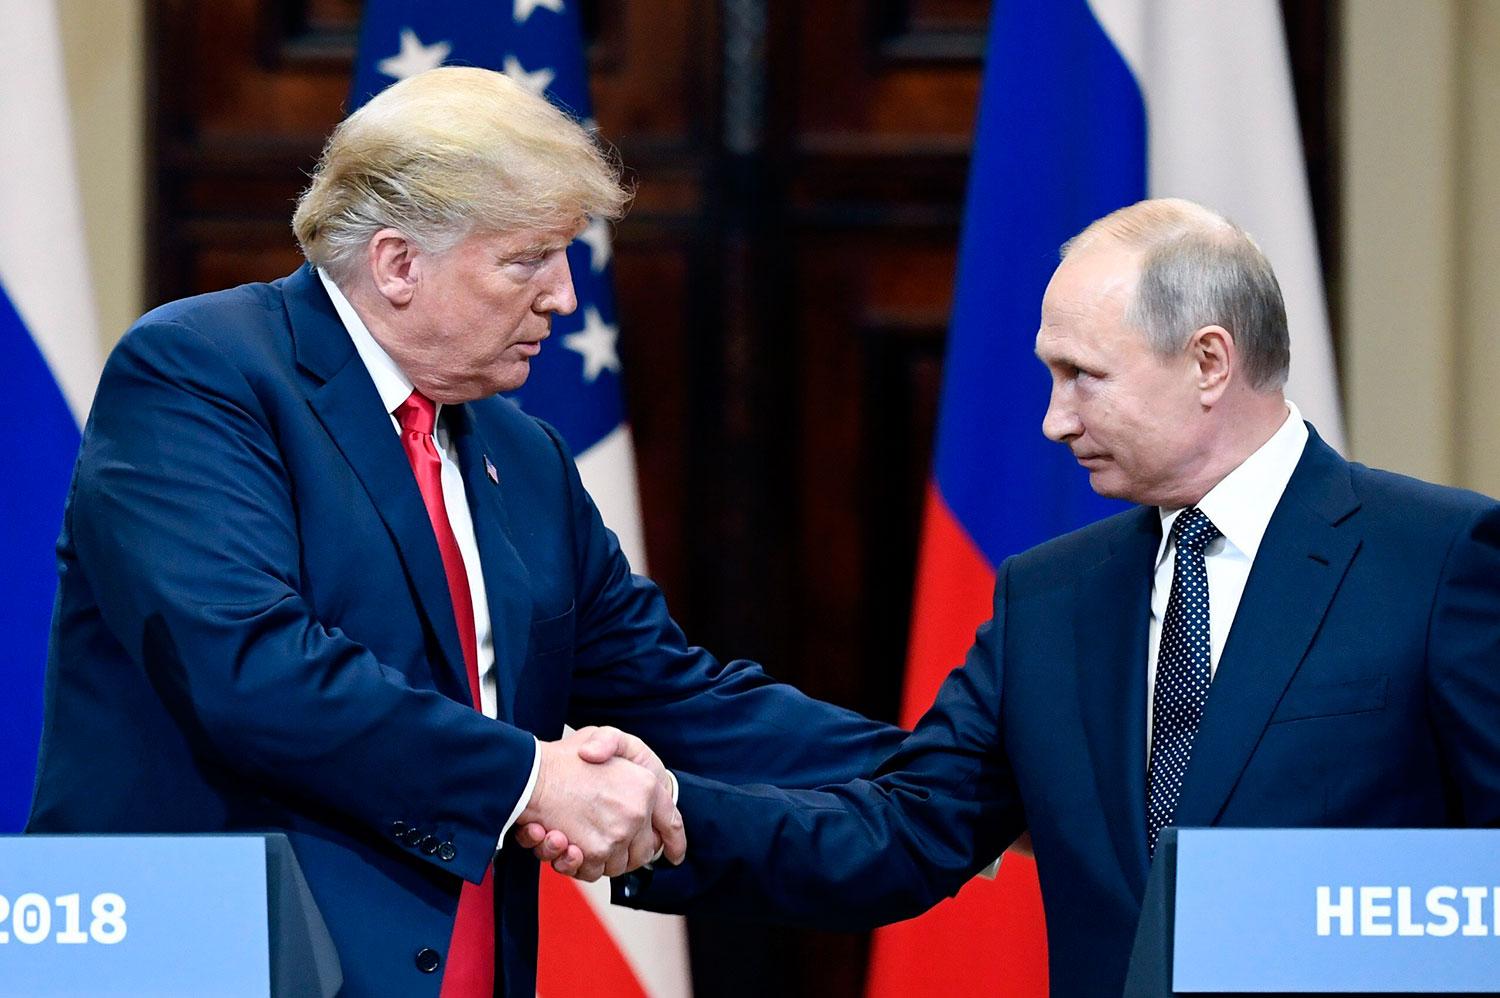 Donald Trump och Vladimir Putin skakar hand i Helsingfors.